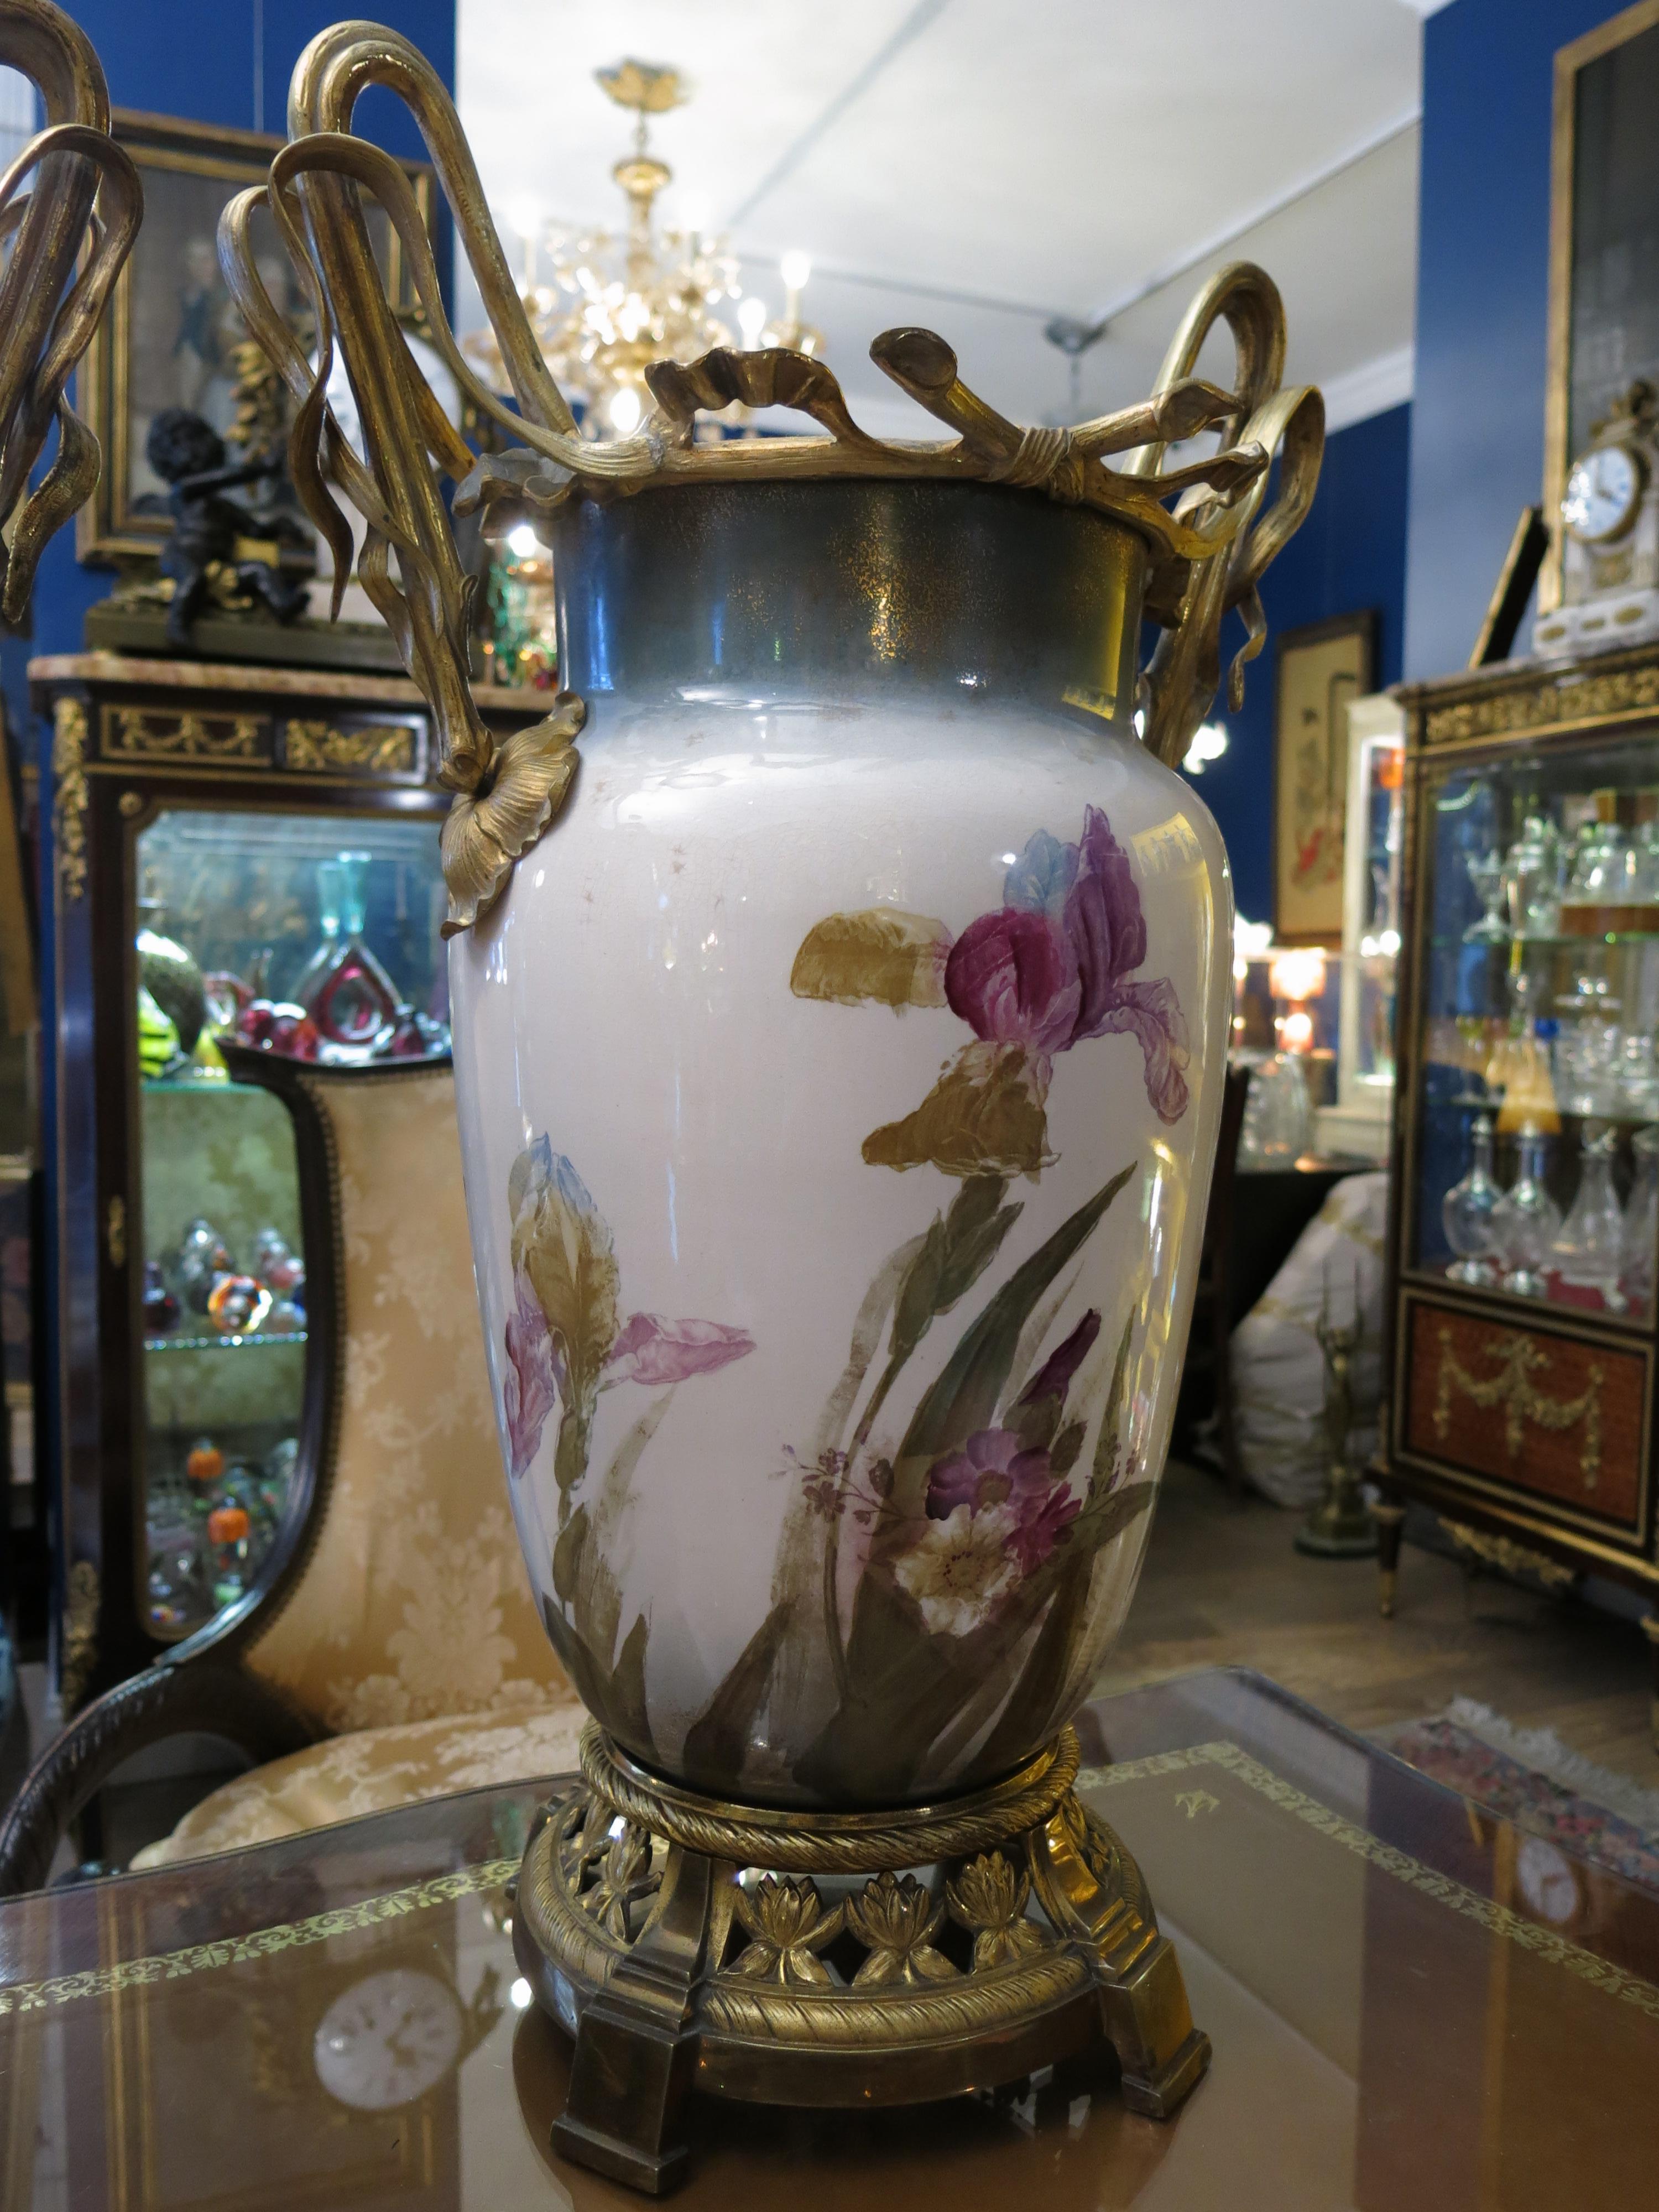 Ein fesselndes Paar antiker Jugendstil-Porzellanamphoren, ein wahres Zeugnis der Eleganz und des Charmes des frühen 20. Jahrhunderts. Jede Amphora ist in außergewöhnlicher Porzellanqualität gefertigt und weist exquisite, handgemalte Blumenmotive